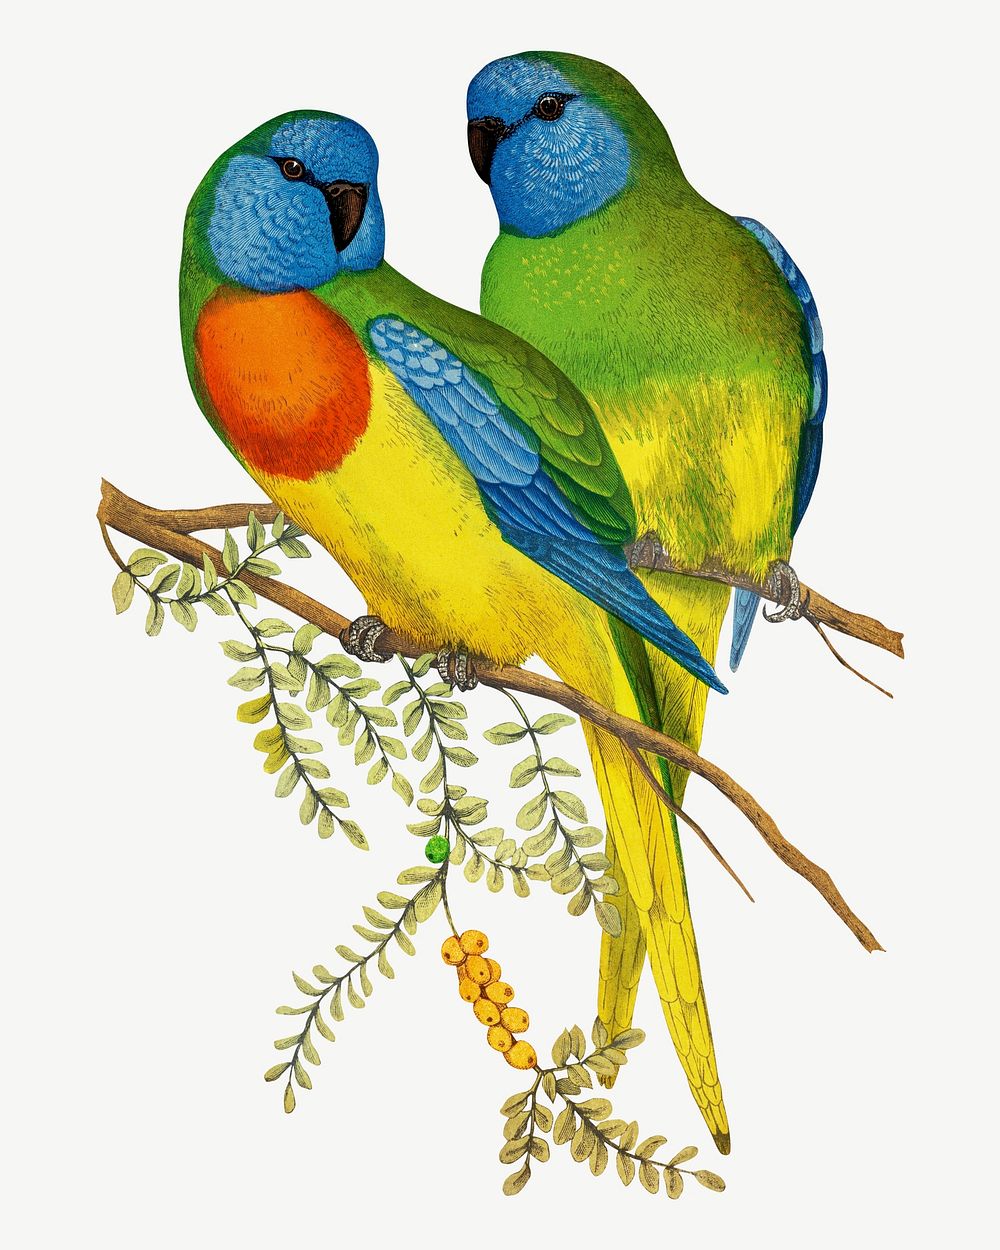 Splendid parakeet, vintage bird illustration psd. Remixed by rawpixel.